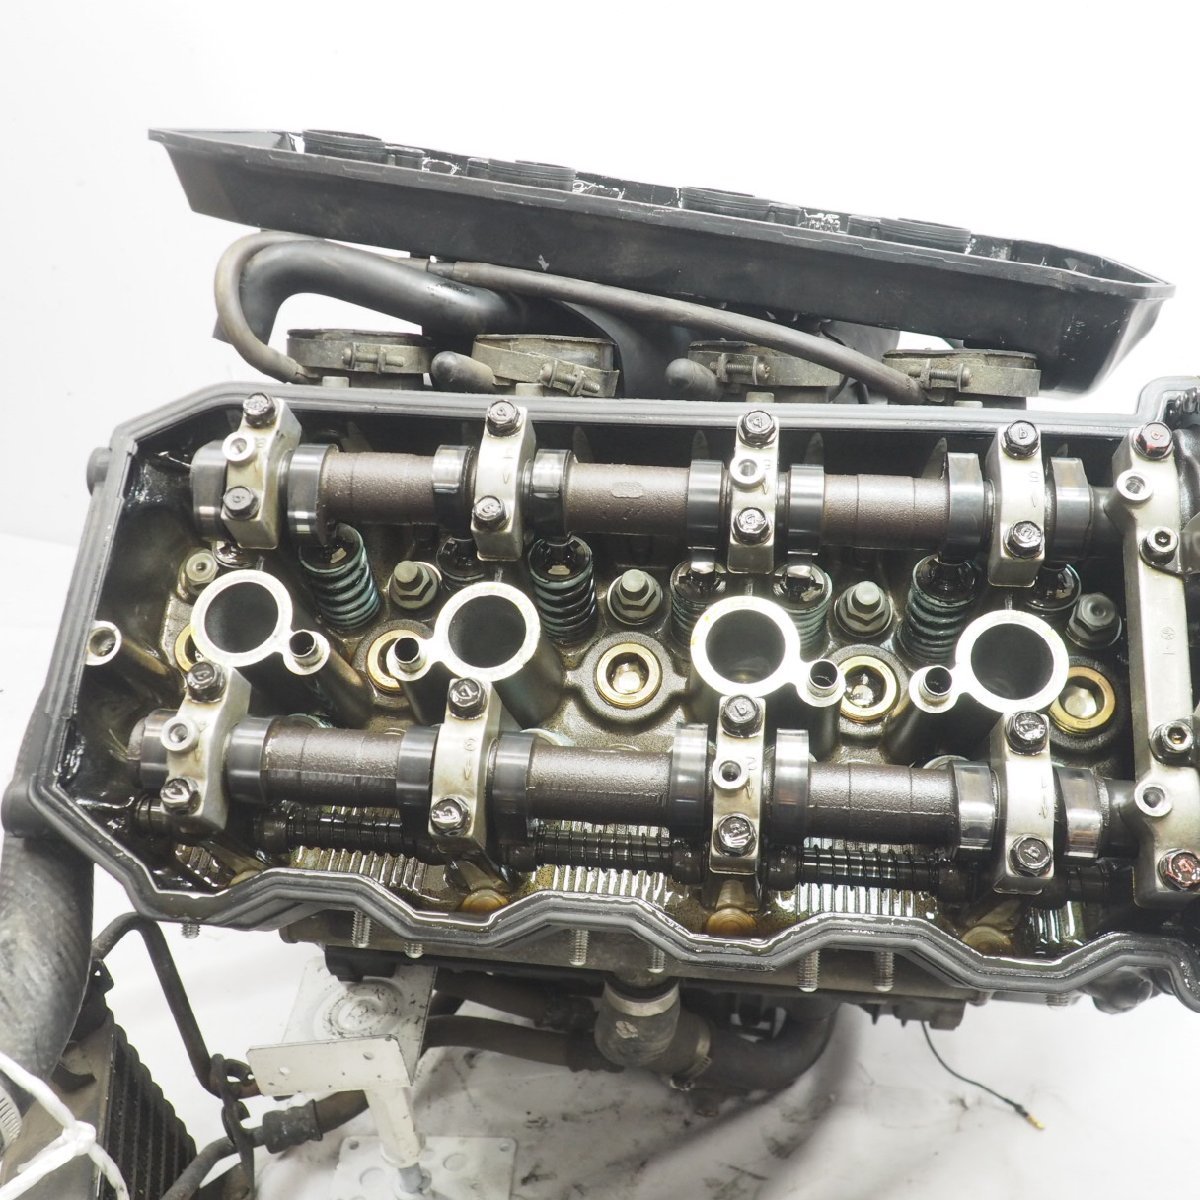 ZZ-R1100D エンジン engine ZZR1100D D3 95年 ZZ-R1100 載せ替えベース等GPZ_画像6